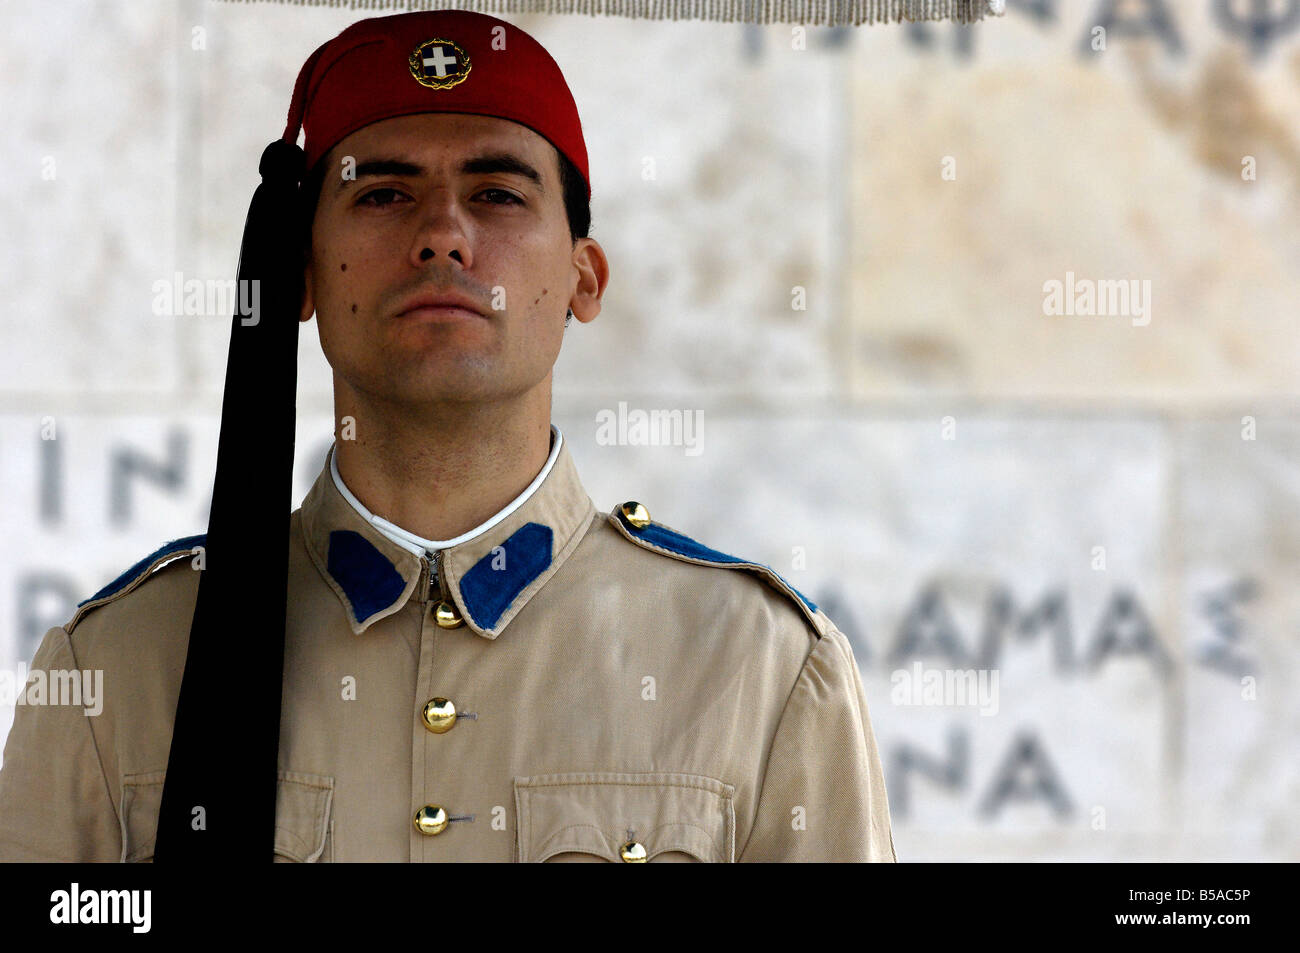 Traditionell gekleideter Soldat, ein Evzone, Gaurding das griechische Parlament in Athen. Stockfoto